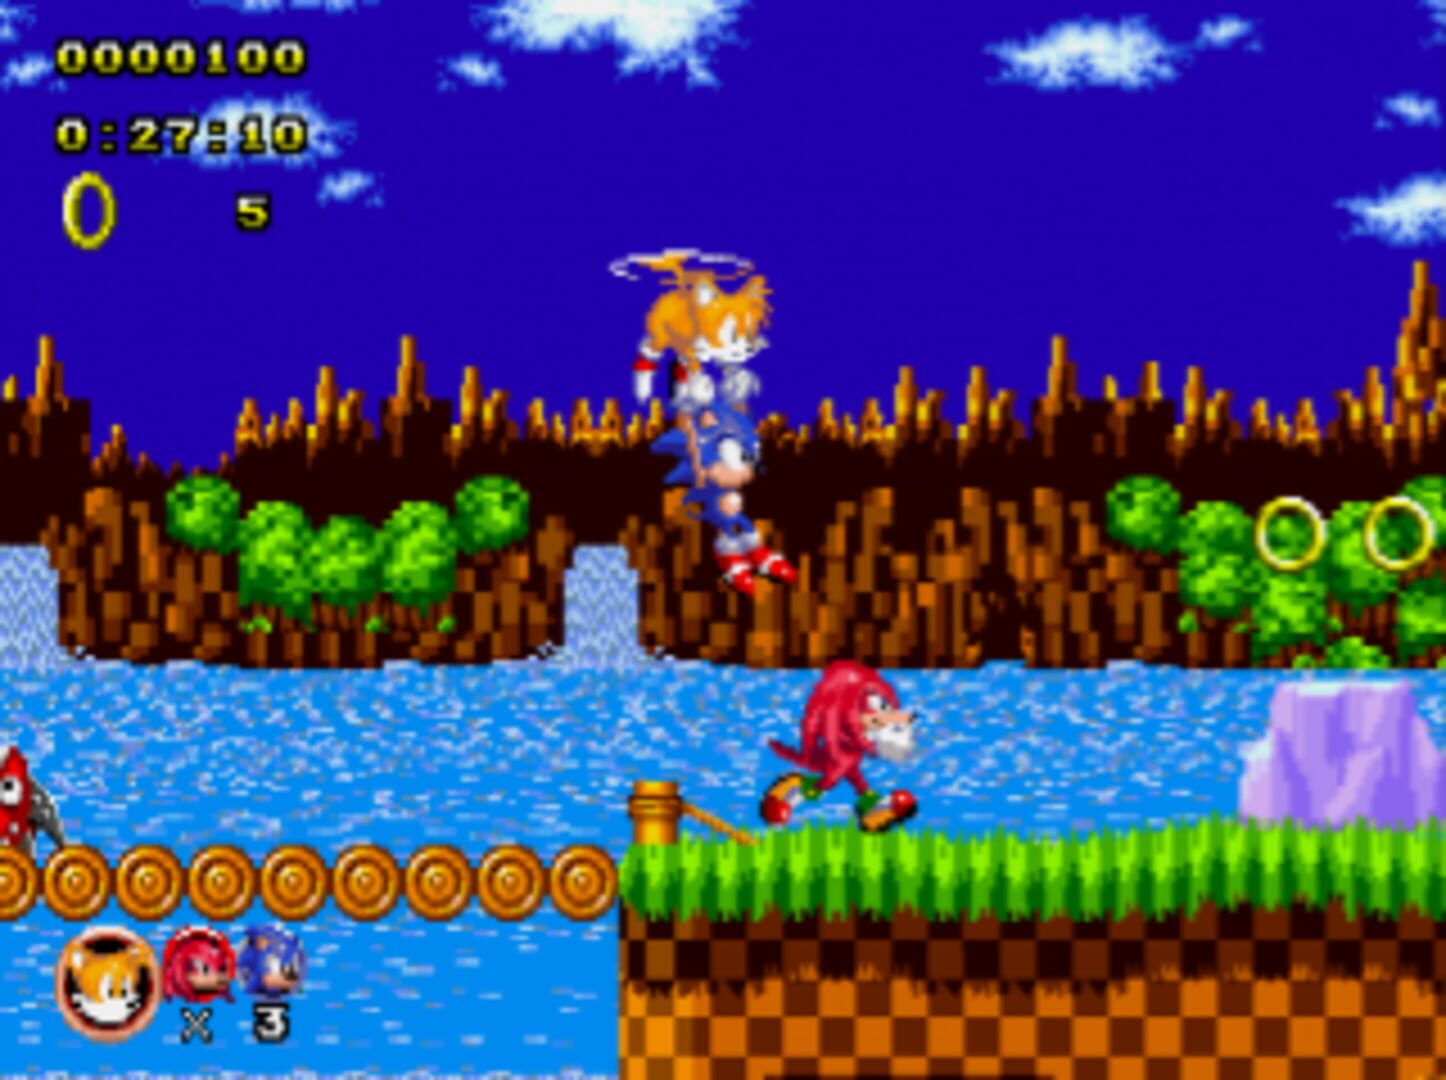 Sonic The Hedgehog Classic screenshots